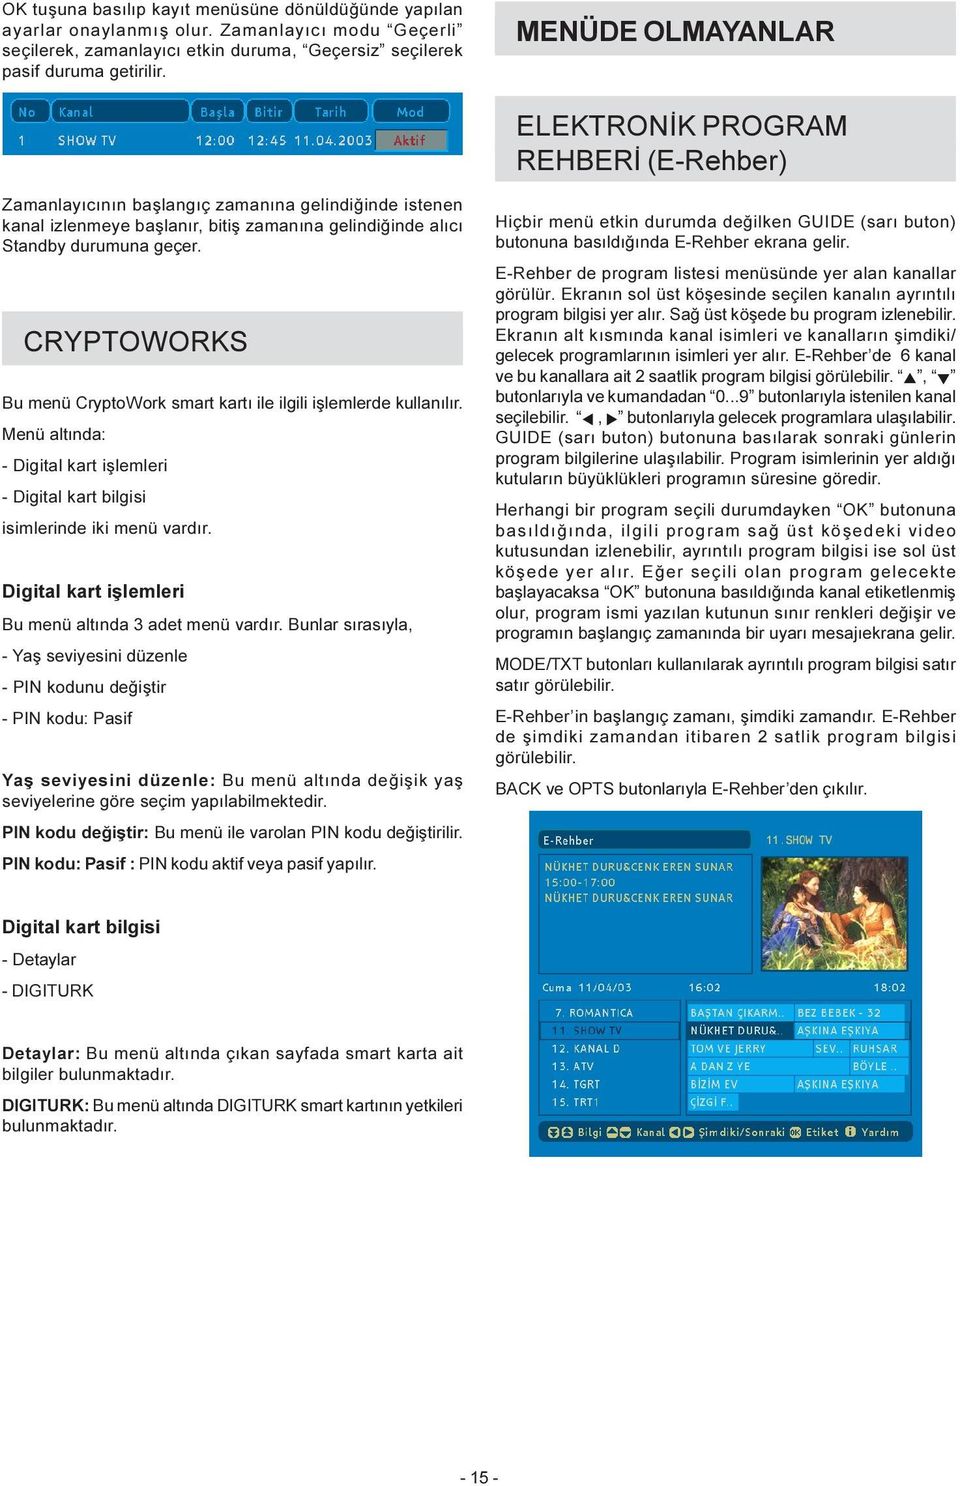 CRYPTOWORKS Bu menü CryptoWork smart kartý ile ilgili iþlemlerde kullanýlýr. Menü altýnda: - Digital kart iþlemleri - Digital kart bilgisi isimlerinde iki menü vardýr.